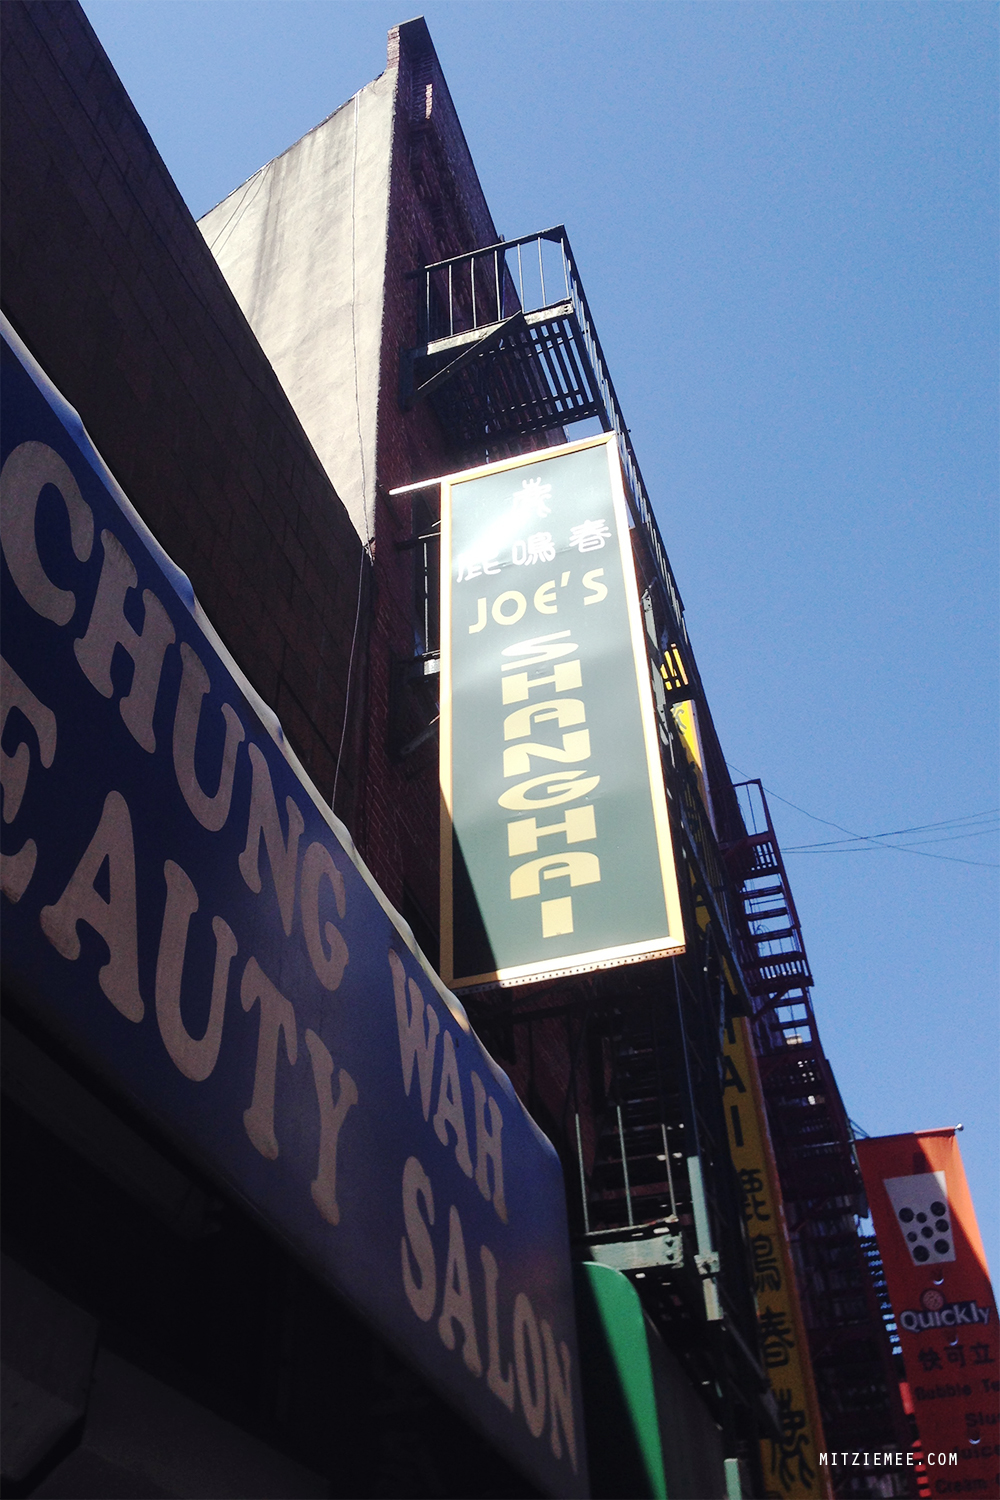 Joe's Shanghai, soup dumplings New York